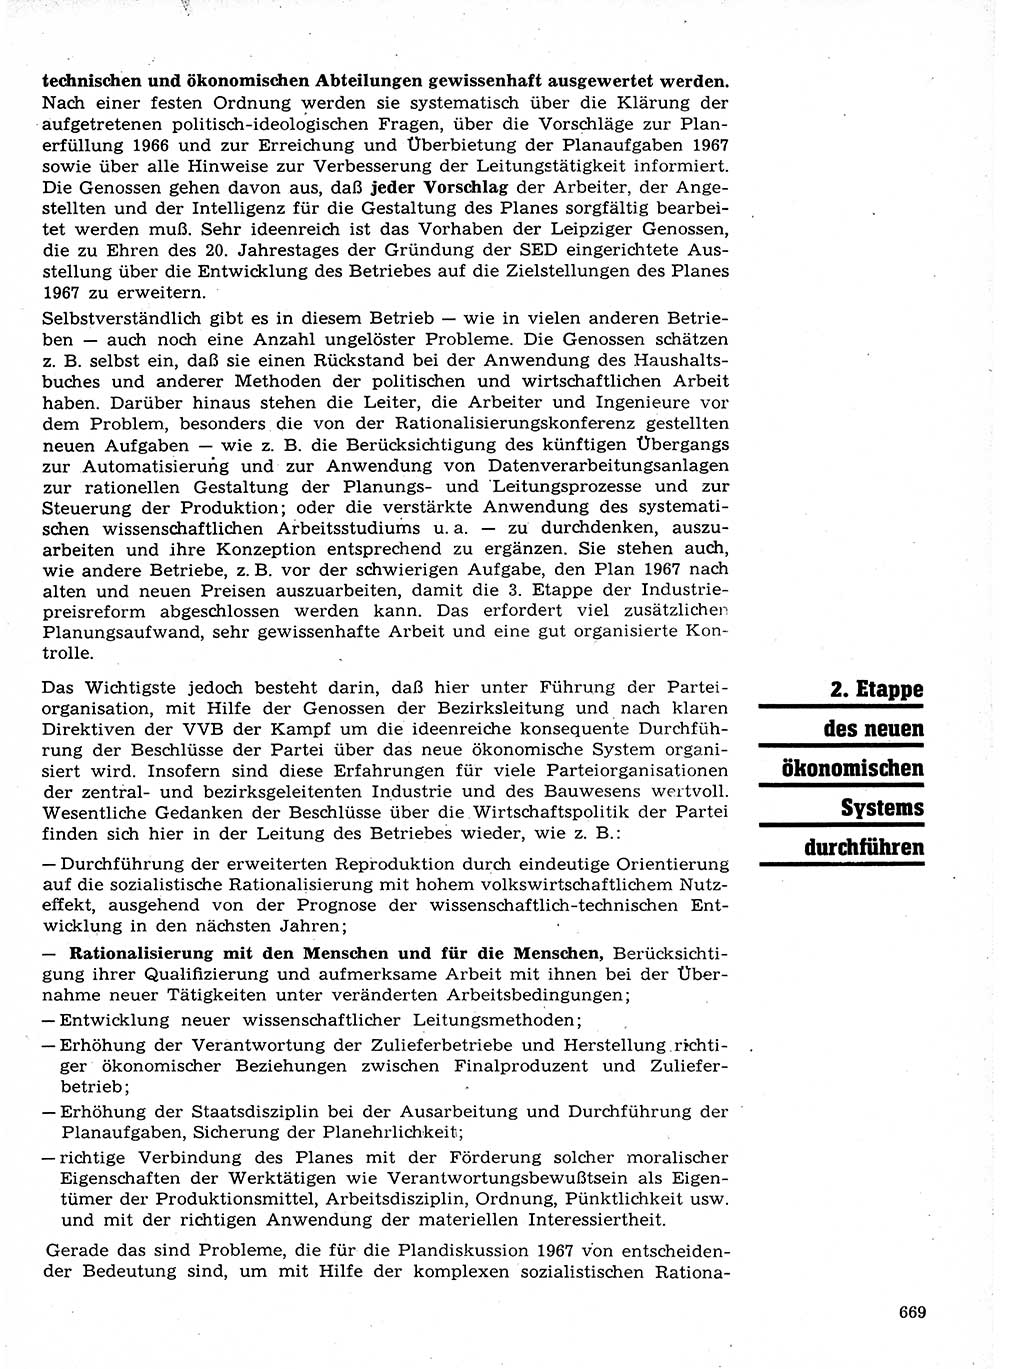 Neuer Weg (NW), Organ des Zentralkomitees (ZK) der SED (Sozialistische Einheitspartei Deutschlands) für Fragen des Parteilebens, 21. Jahrgang [Deutsche Demokratische Republik (DDR)] 1966, Seite 669 (NW ZK SED DDR 1966, S. 669)